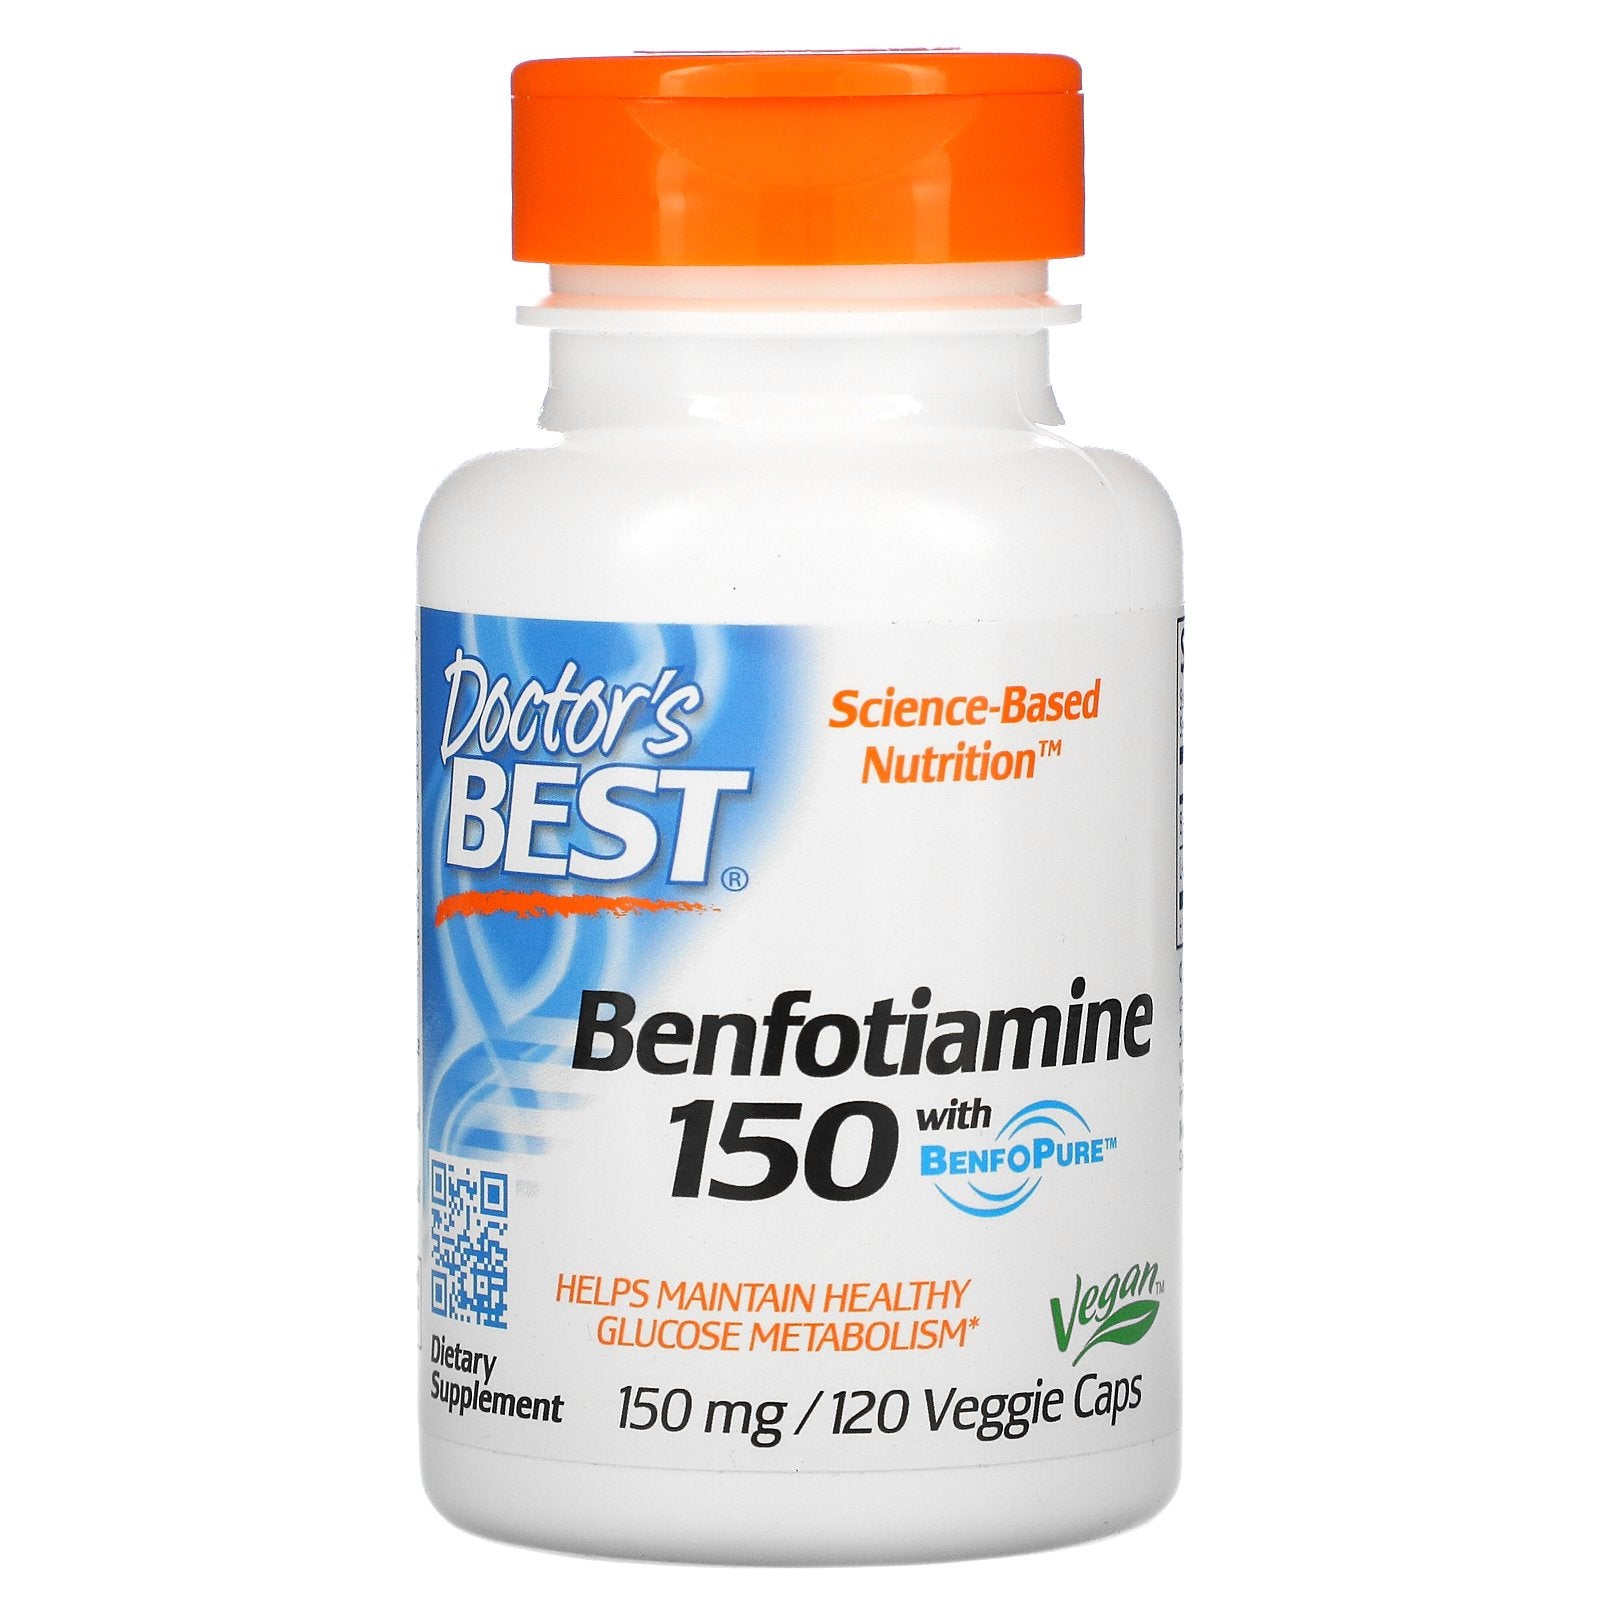 Doctor's Best, Benfotiamine 150 with BenfoPure, 150 mg Veggie Caps